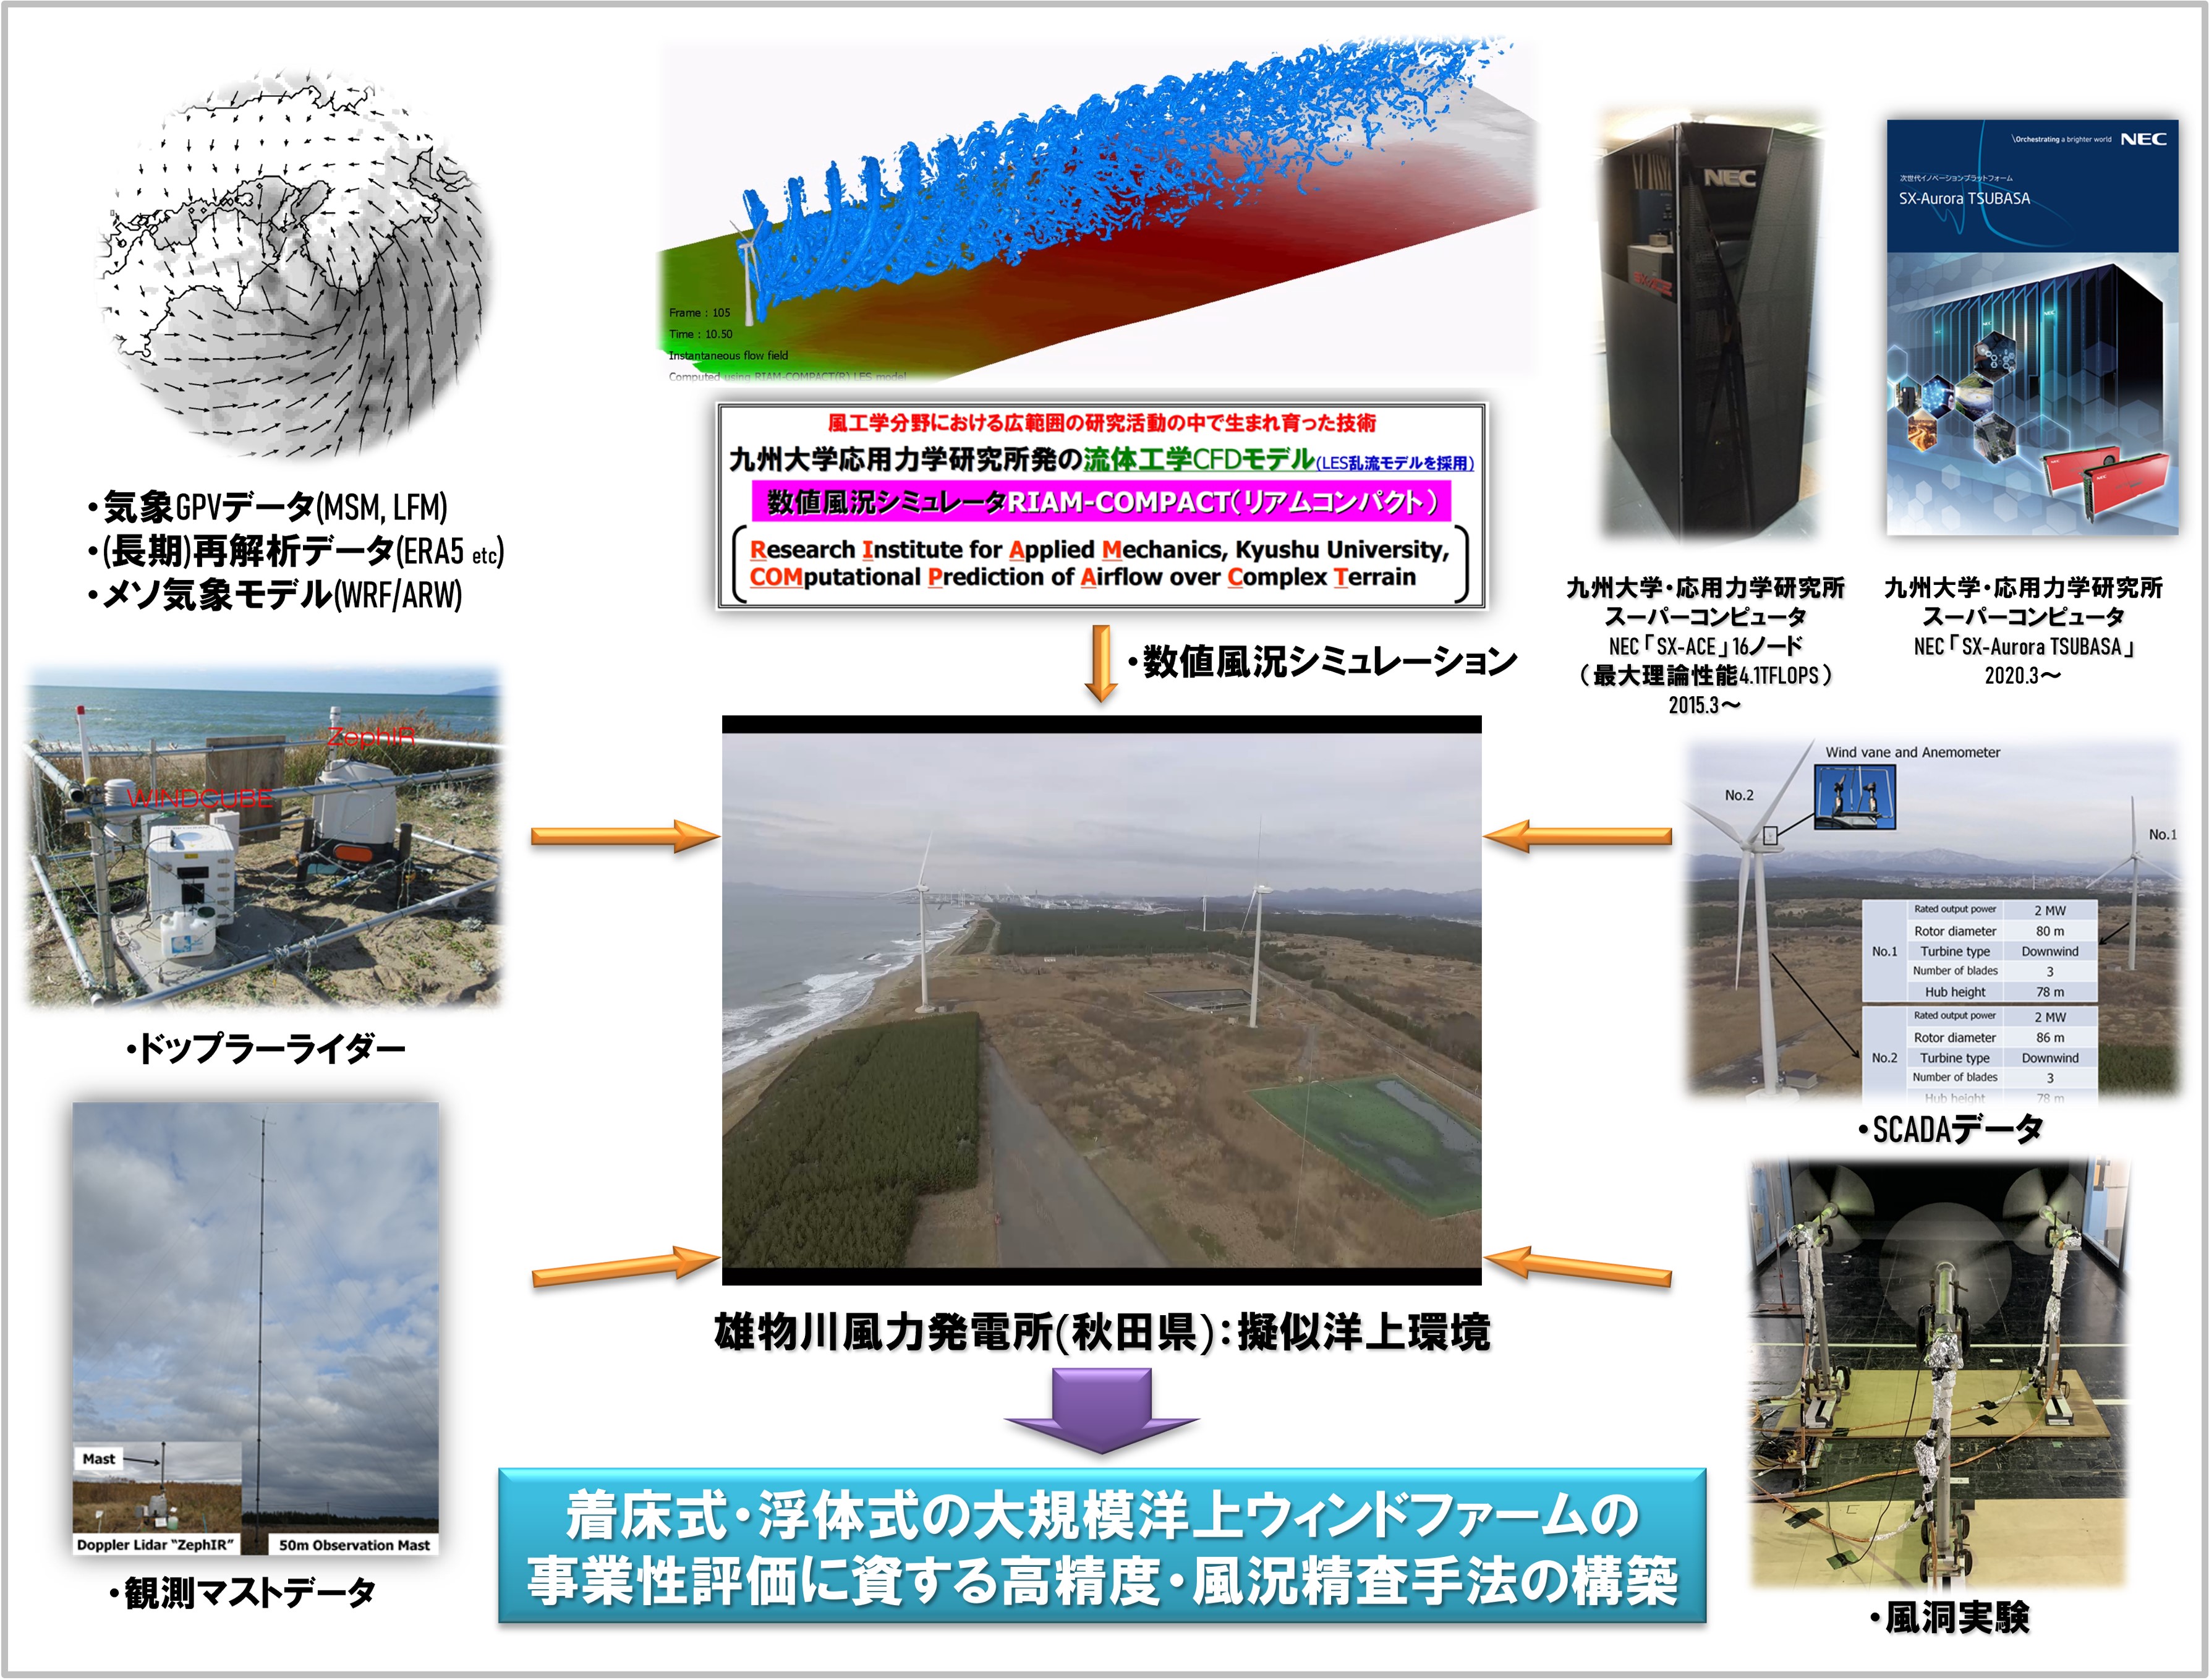 図3 現在、実施中の雄物川風力発電所(秋田県)を対象にした共同研究の内容